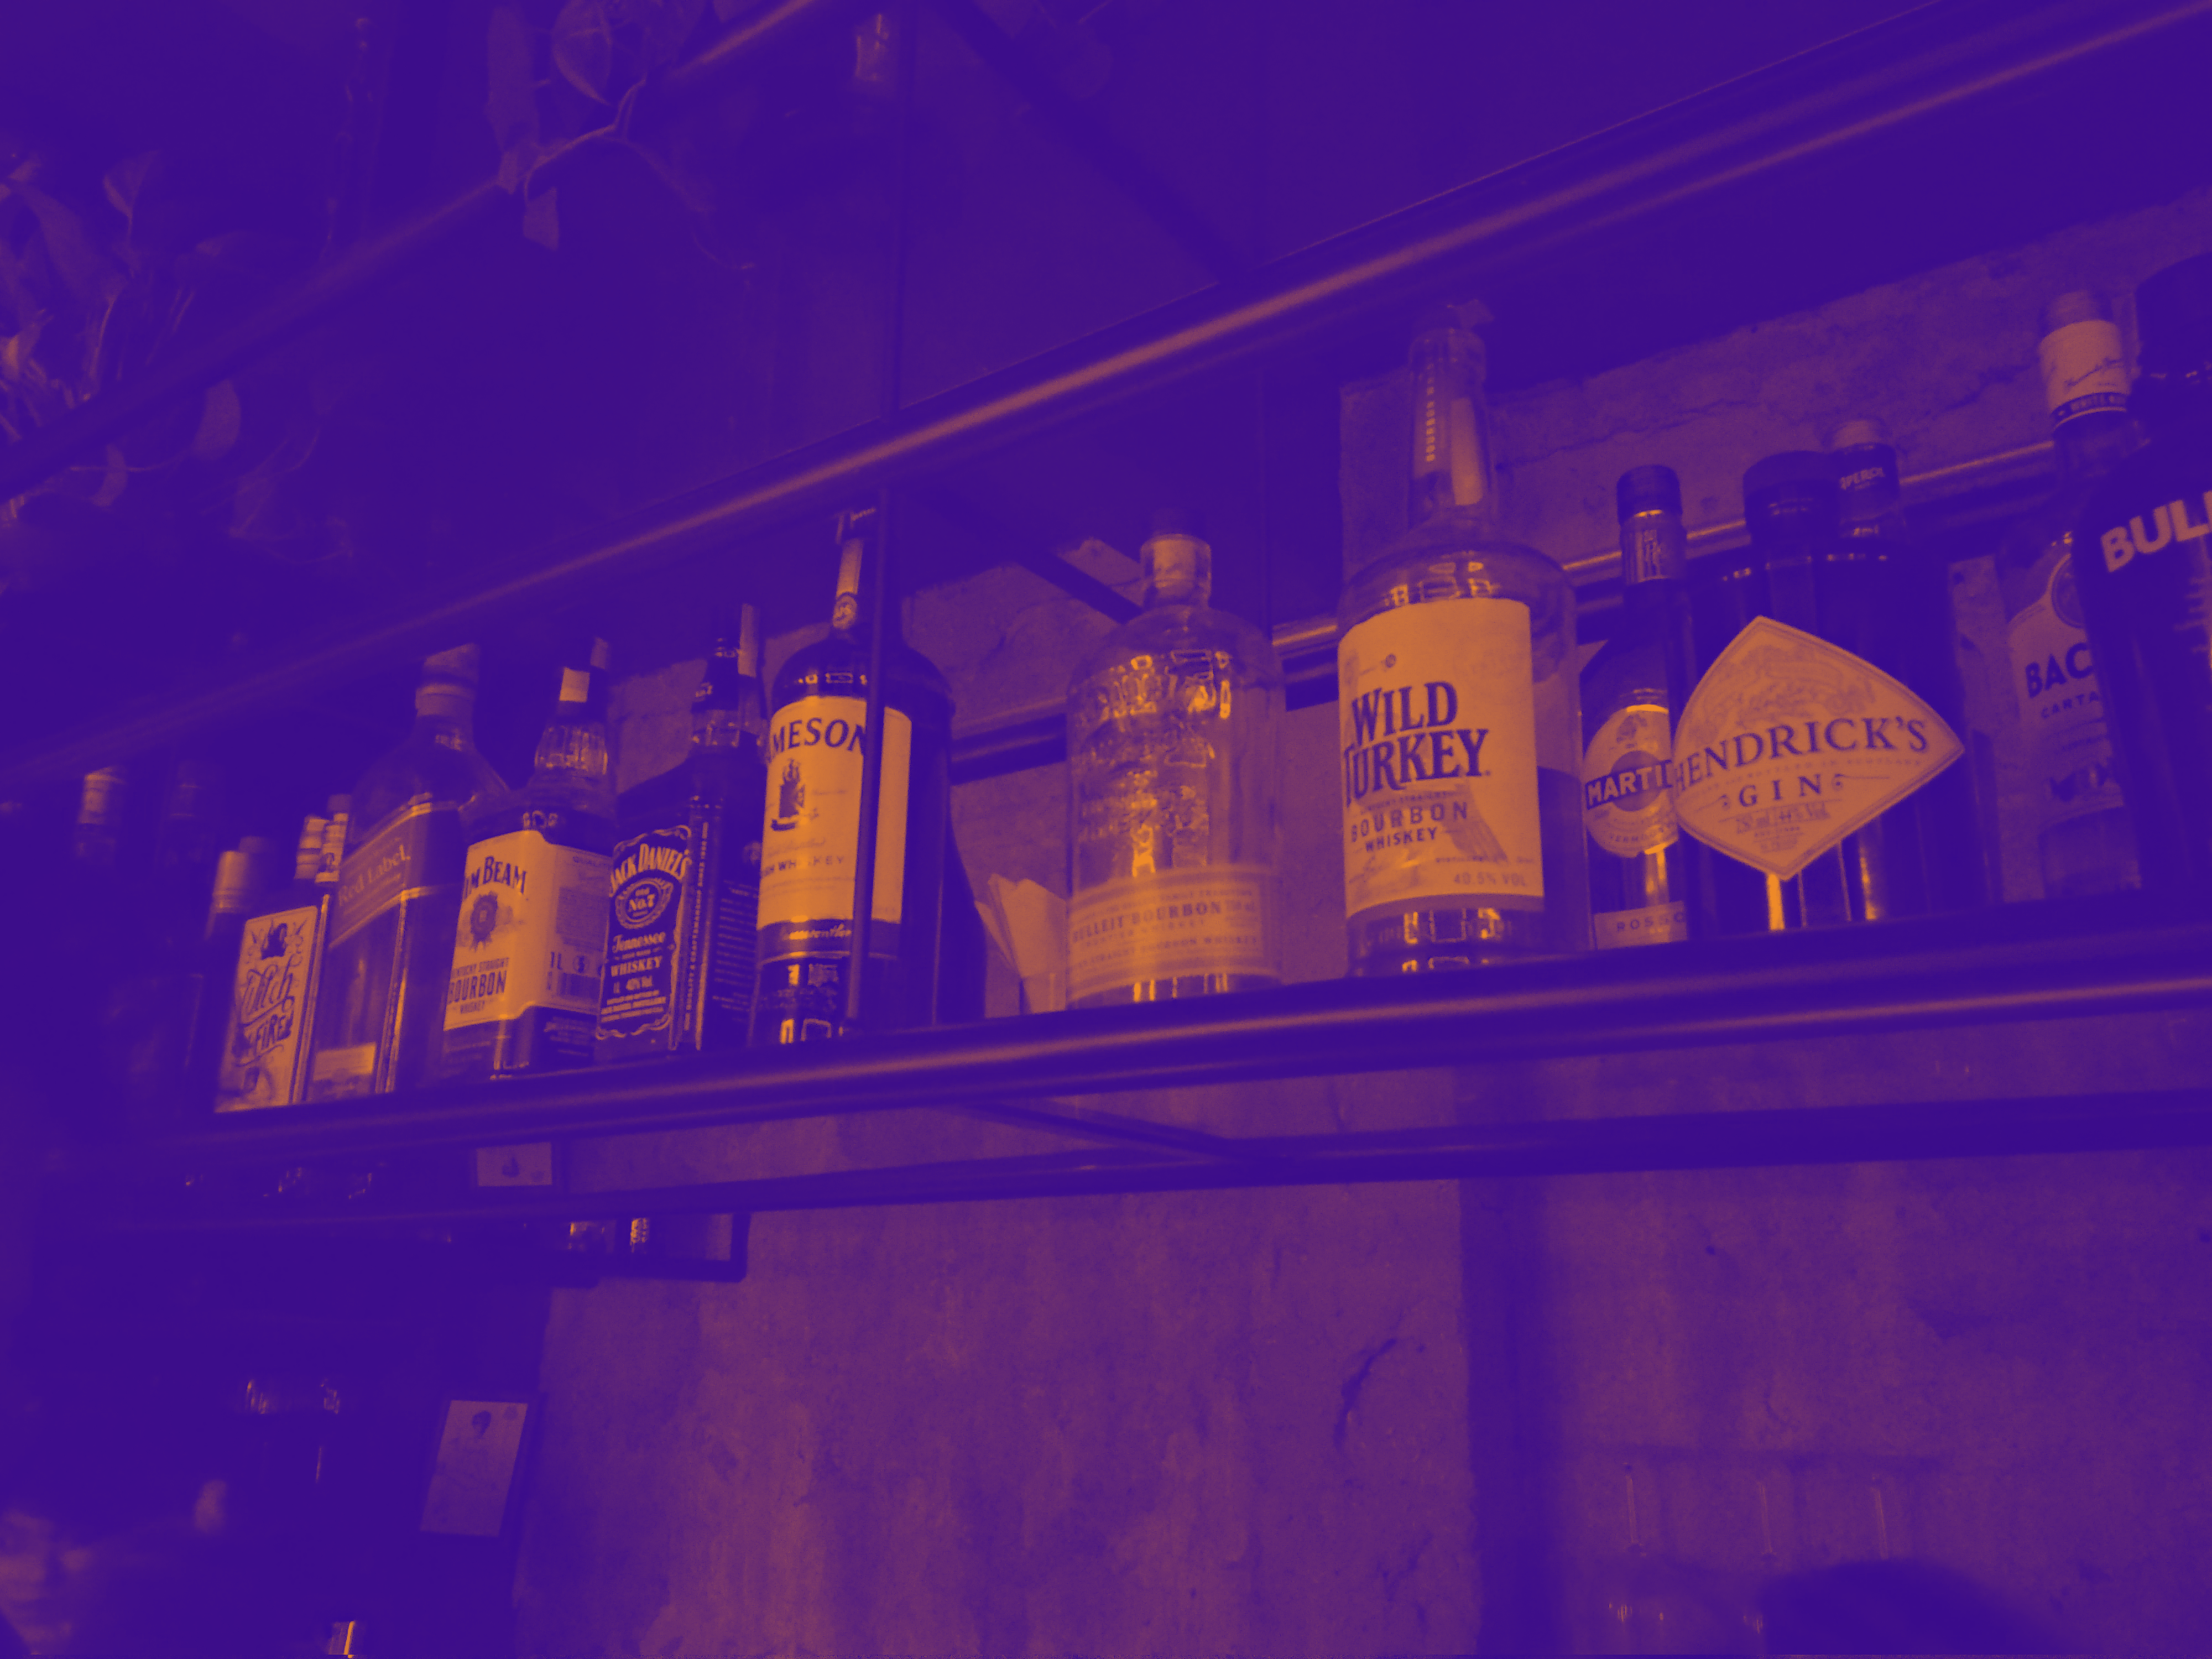 Scotch, Bourbon, Whisky, Brandy, Conhaque, Whisky Irlandês, Rye. Que?